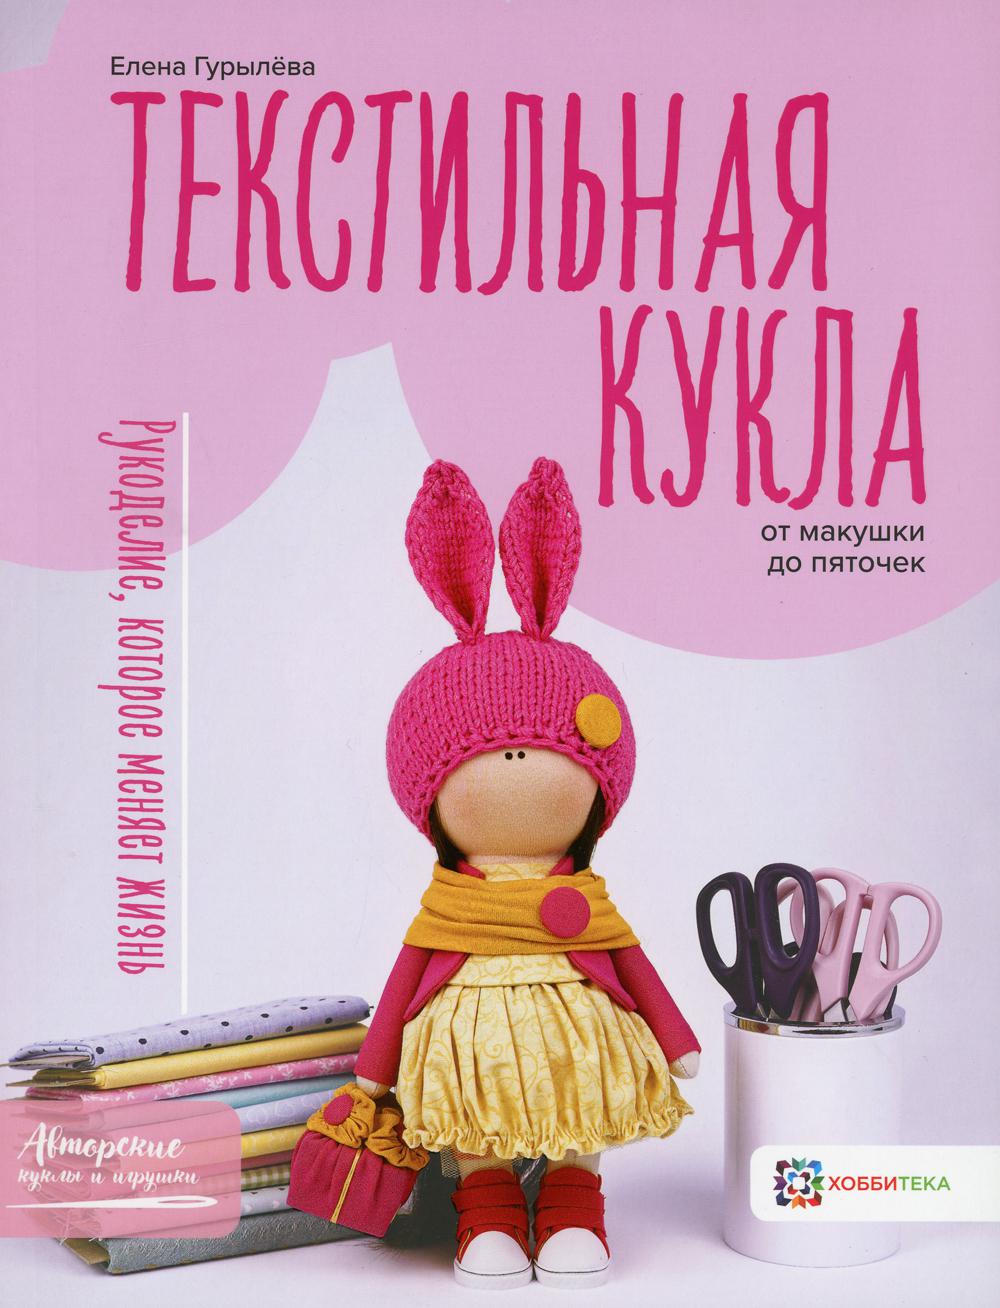 фото Книга текстильная кукла от макушки до пяточек хоббитека